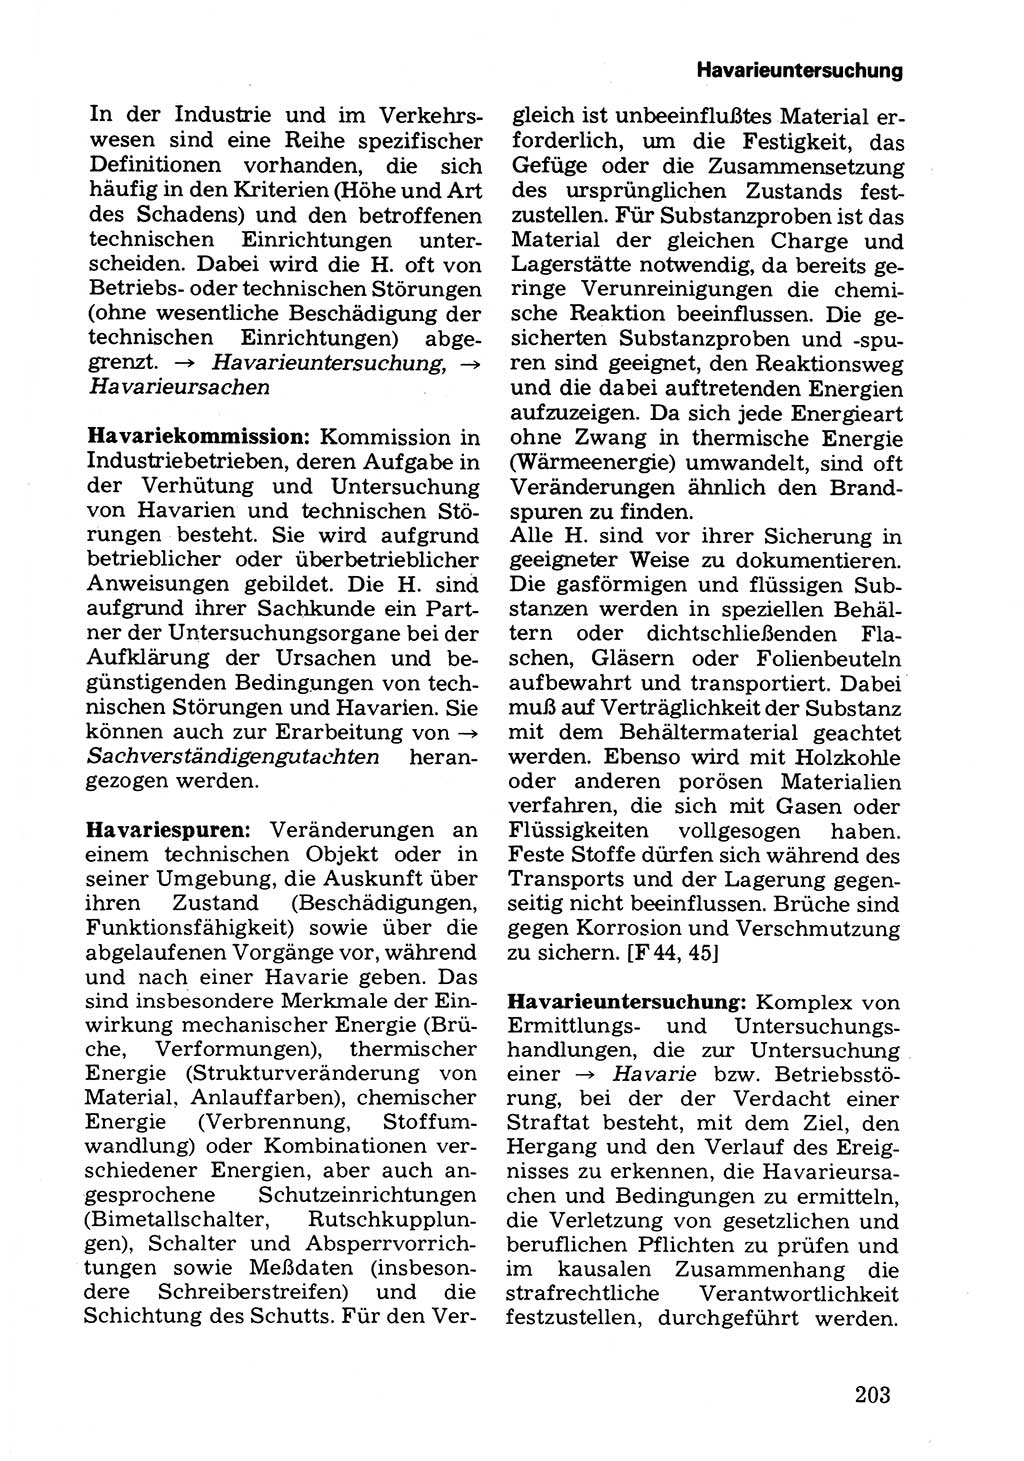 Wörterbuch der sozialistischen Kriminalistik [Deutsche Demokratische Republik (DDR)] 1981, Seite 203 (Wb. soz. Krim. DDR 1981, S. 203)